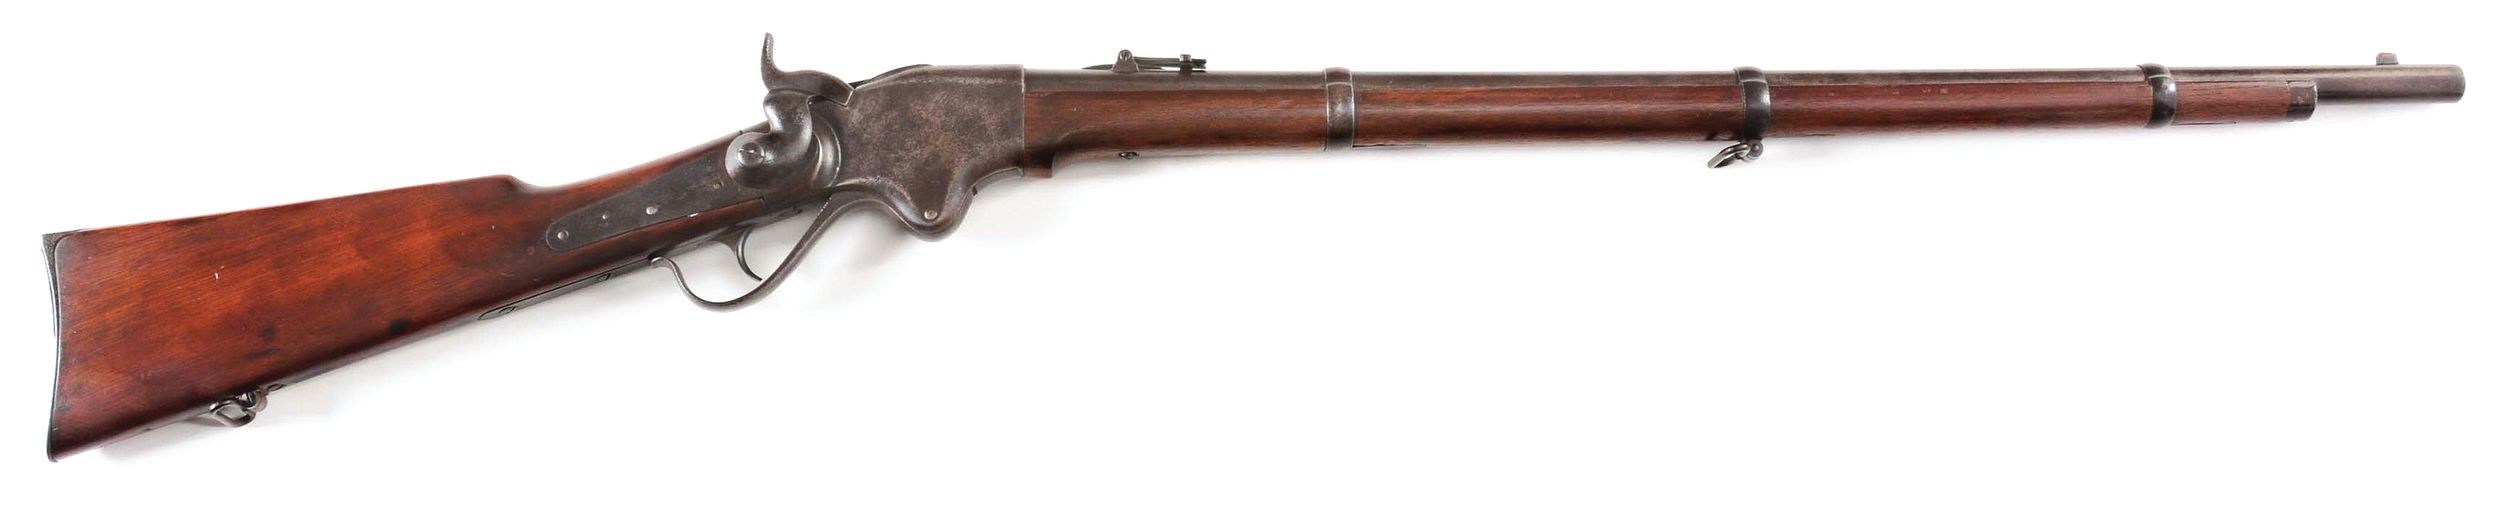 Original Model 1860 Spencer Rifle